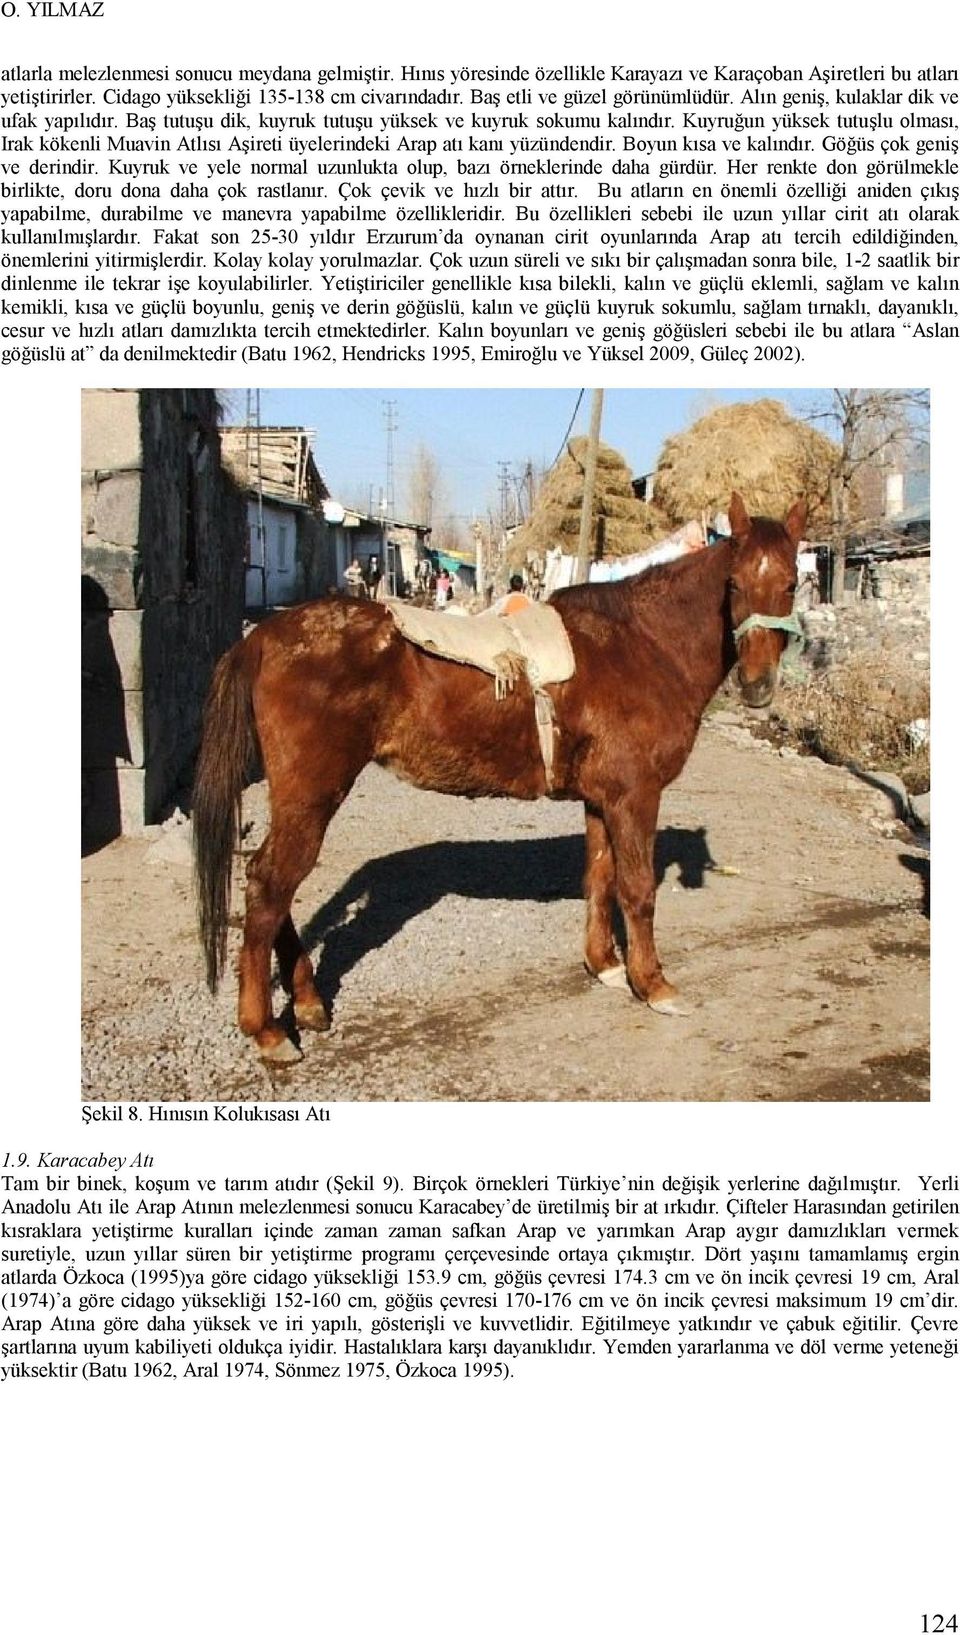 Kuyruğun yüksek tutuşlu olması, Irak kökenli Muavin Atlısı Aşireti üyelerindeki Arap atı kanı yüzündendir. Boyun kısa ve kalındır. Göğüs çok geniş ve derindir.